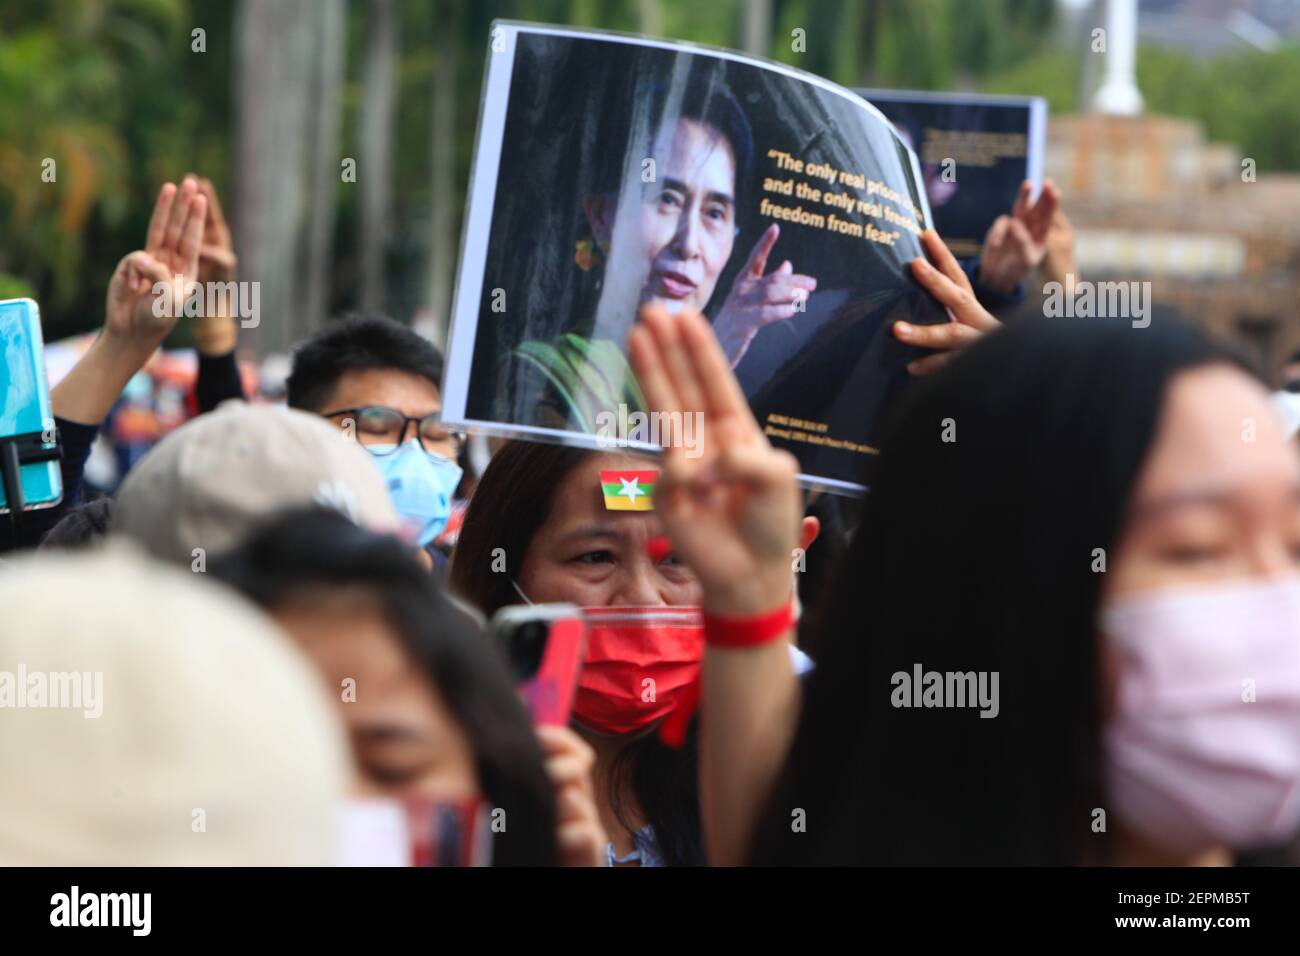 Taipei, Taipei, Taiwan. Februar 2021, 28th. Berner Anhänger der Nationalen Liga für Demokratie halten während eines marsches Zeichen von Aung San Sui Kyi ab, um gegen den anhaltenden Militärputsch in Myanmar zu protestieren und die Freilassung der Zivilführerin Aung San Suu Kyi an der Nationalen Universität Taiwan zu fordern. Der marsch, so der Organisator, zielt darauf ab, in Solidarität mit den Demonstranten zu stehen, die während der militärischen Razzien in Myanmar verletzt und begraben wurden, und mehr internationale Aufmerksamkeit für die Situation des Putsches zu fordern, der Anfang Februar stattfand (Foto: © Daniel CE Stockfoto